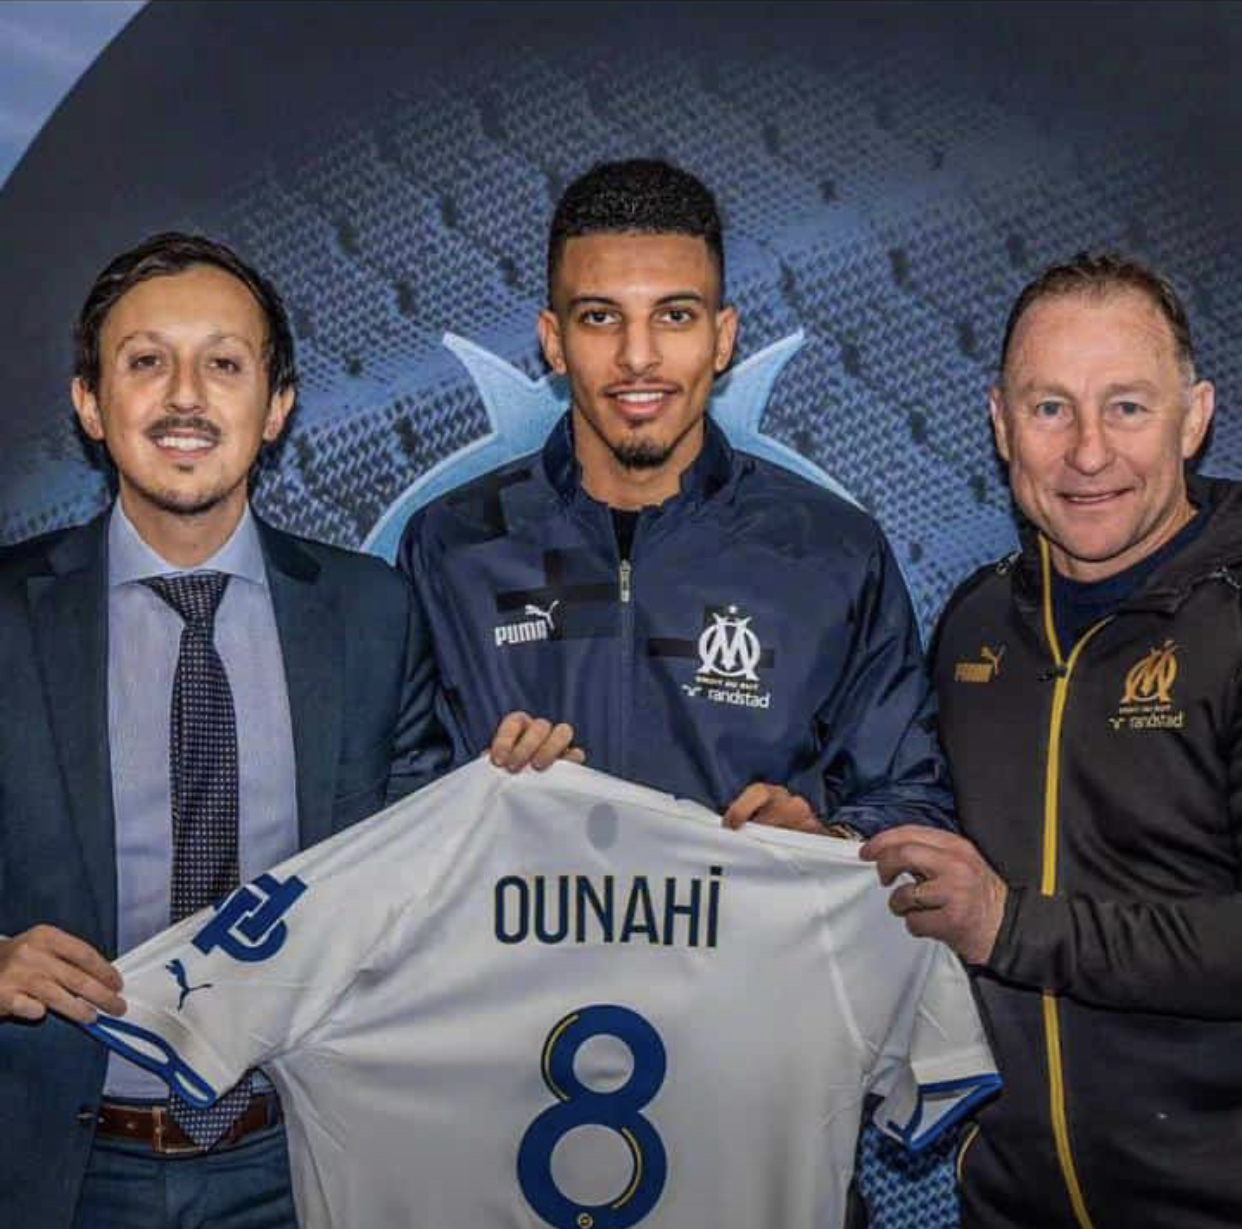 Ounahi marque son premier but avec l’Olympique de Marseille